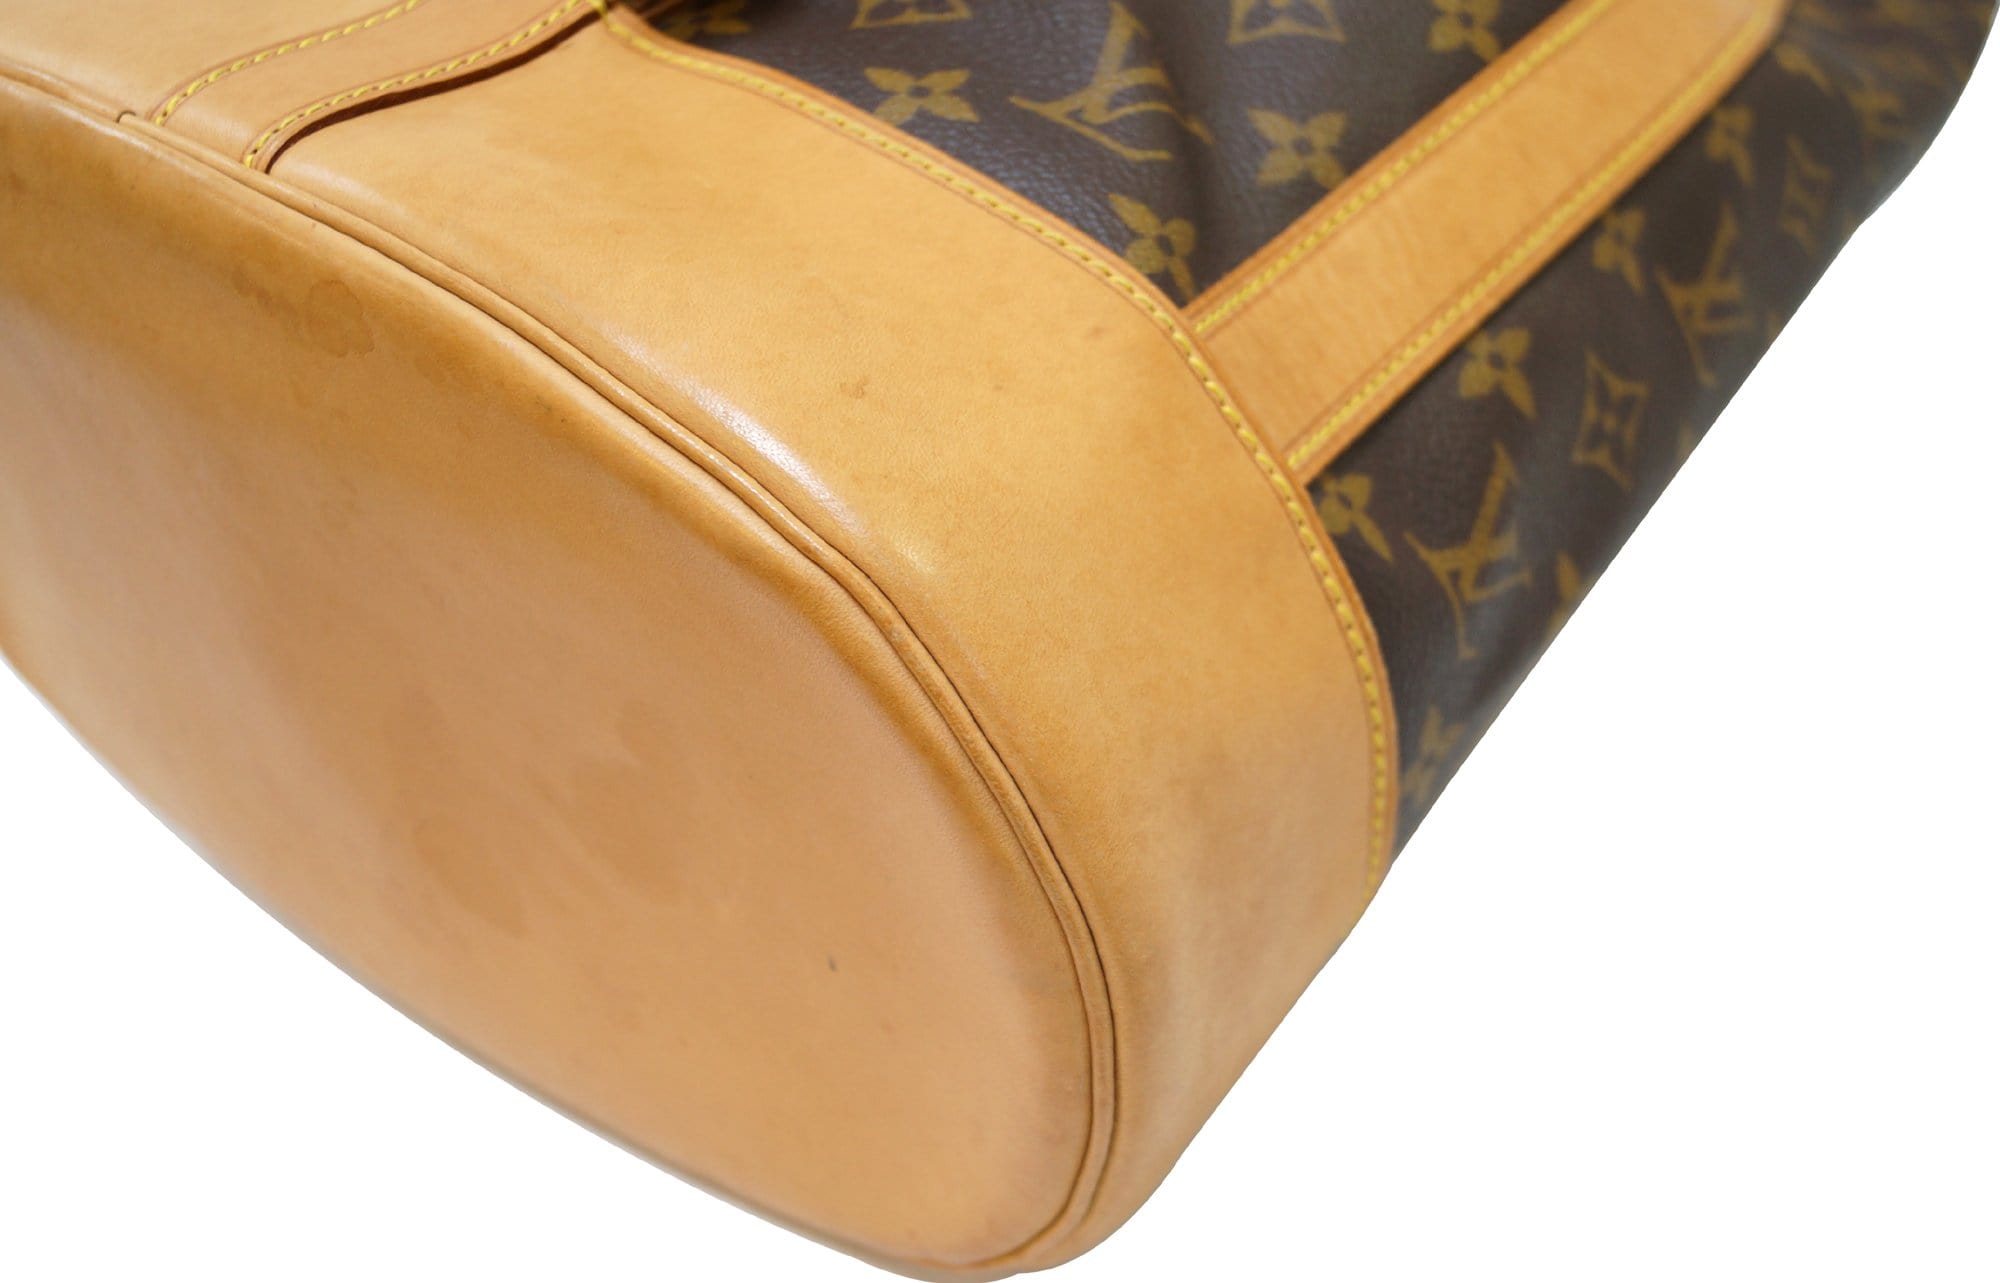 Randonnee Backpack PM Monogram – Keeks Designer Handbags